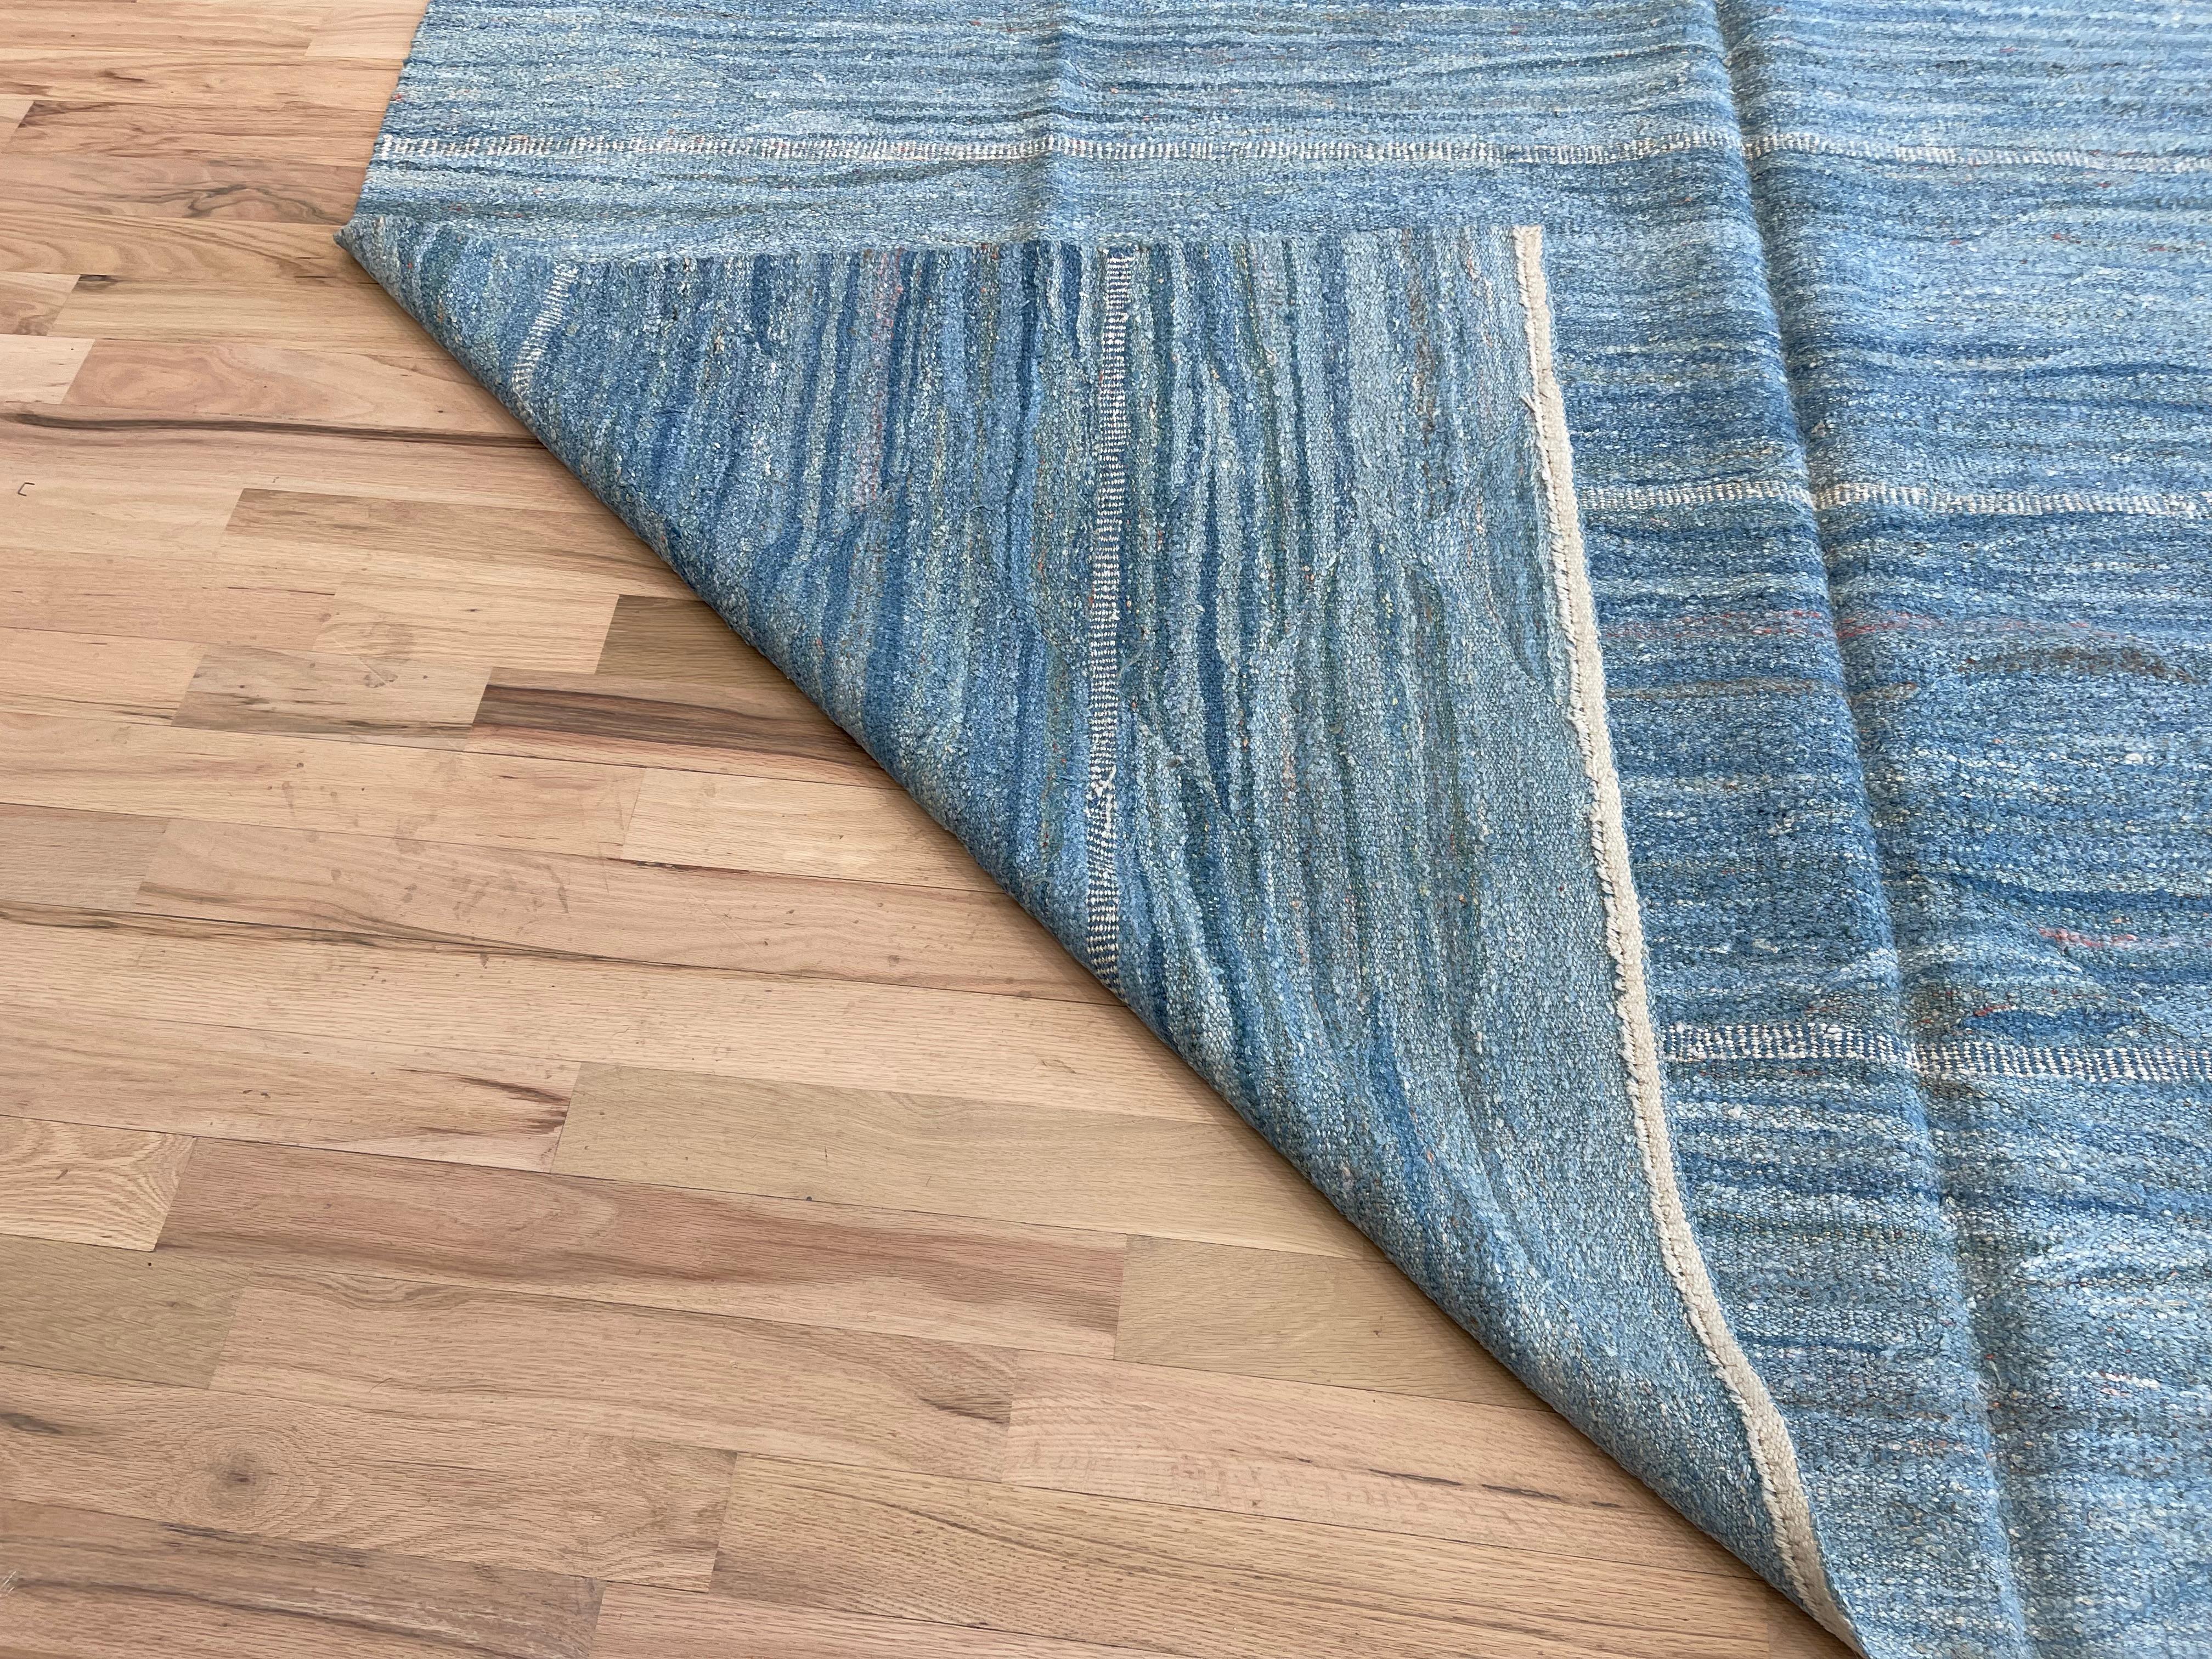 Peppen Sie Ihr Zuhause mit unserem türkischen Teppich auf, der mit einem atemberaubenden  Schattierungen von Blau. Mit seiner reversiblen Verwendung bietet dieser Teppich Vielseitigkeit und einen Hauch von Eleganz für jeden Raum. Setzen Sie mit